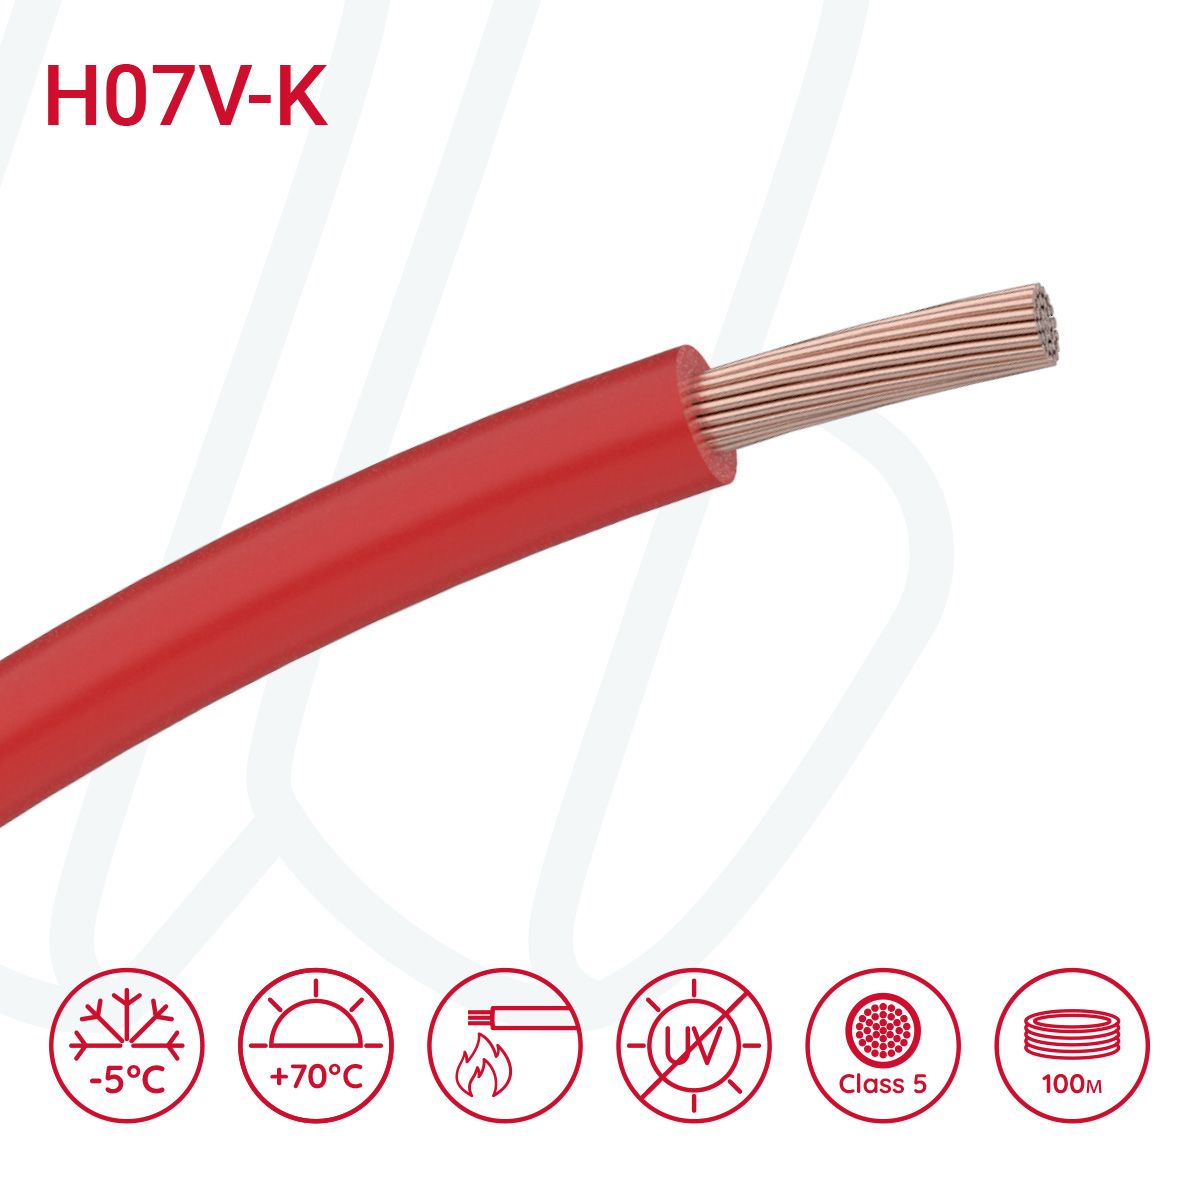 Провід монтажний гнучкий H07V-K 4 мм² червоний, 01, 4